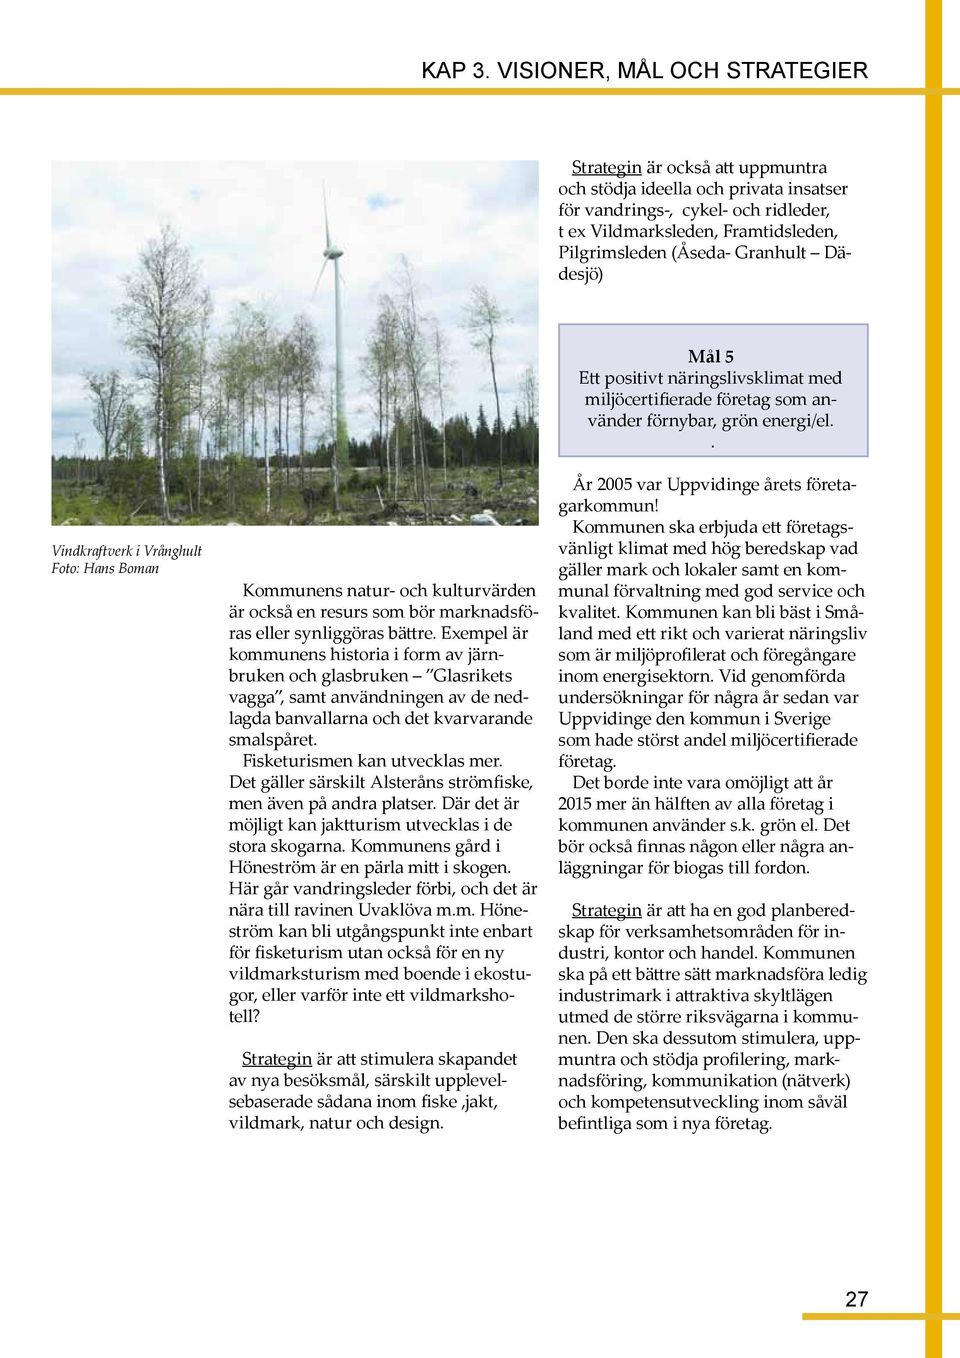 . Vindkraftverk i Vrånghult Foto: Hans Boman Kommunens natur- och kulturvärden är också en resurs som bör marknadsföras eller synliggöras bättre.